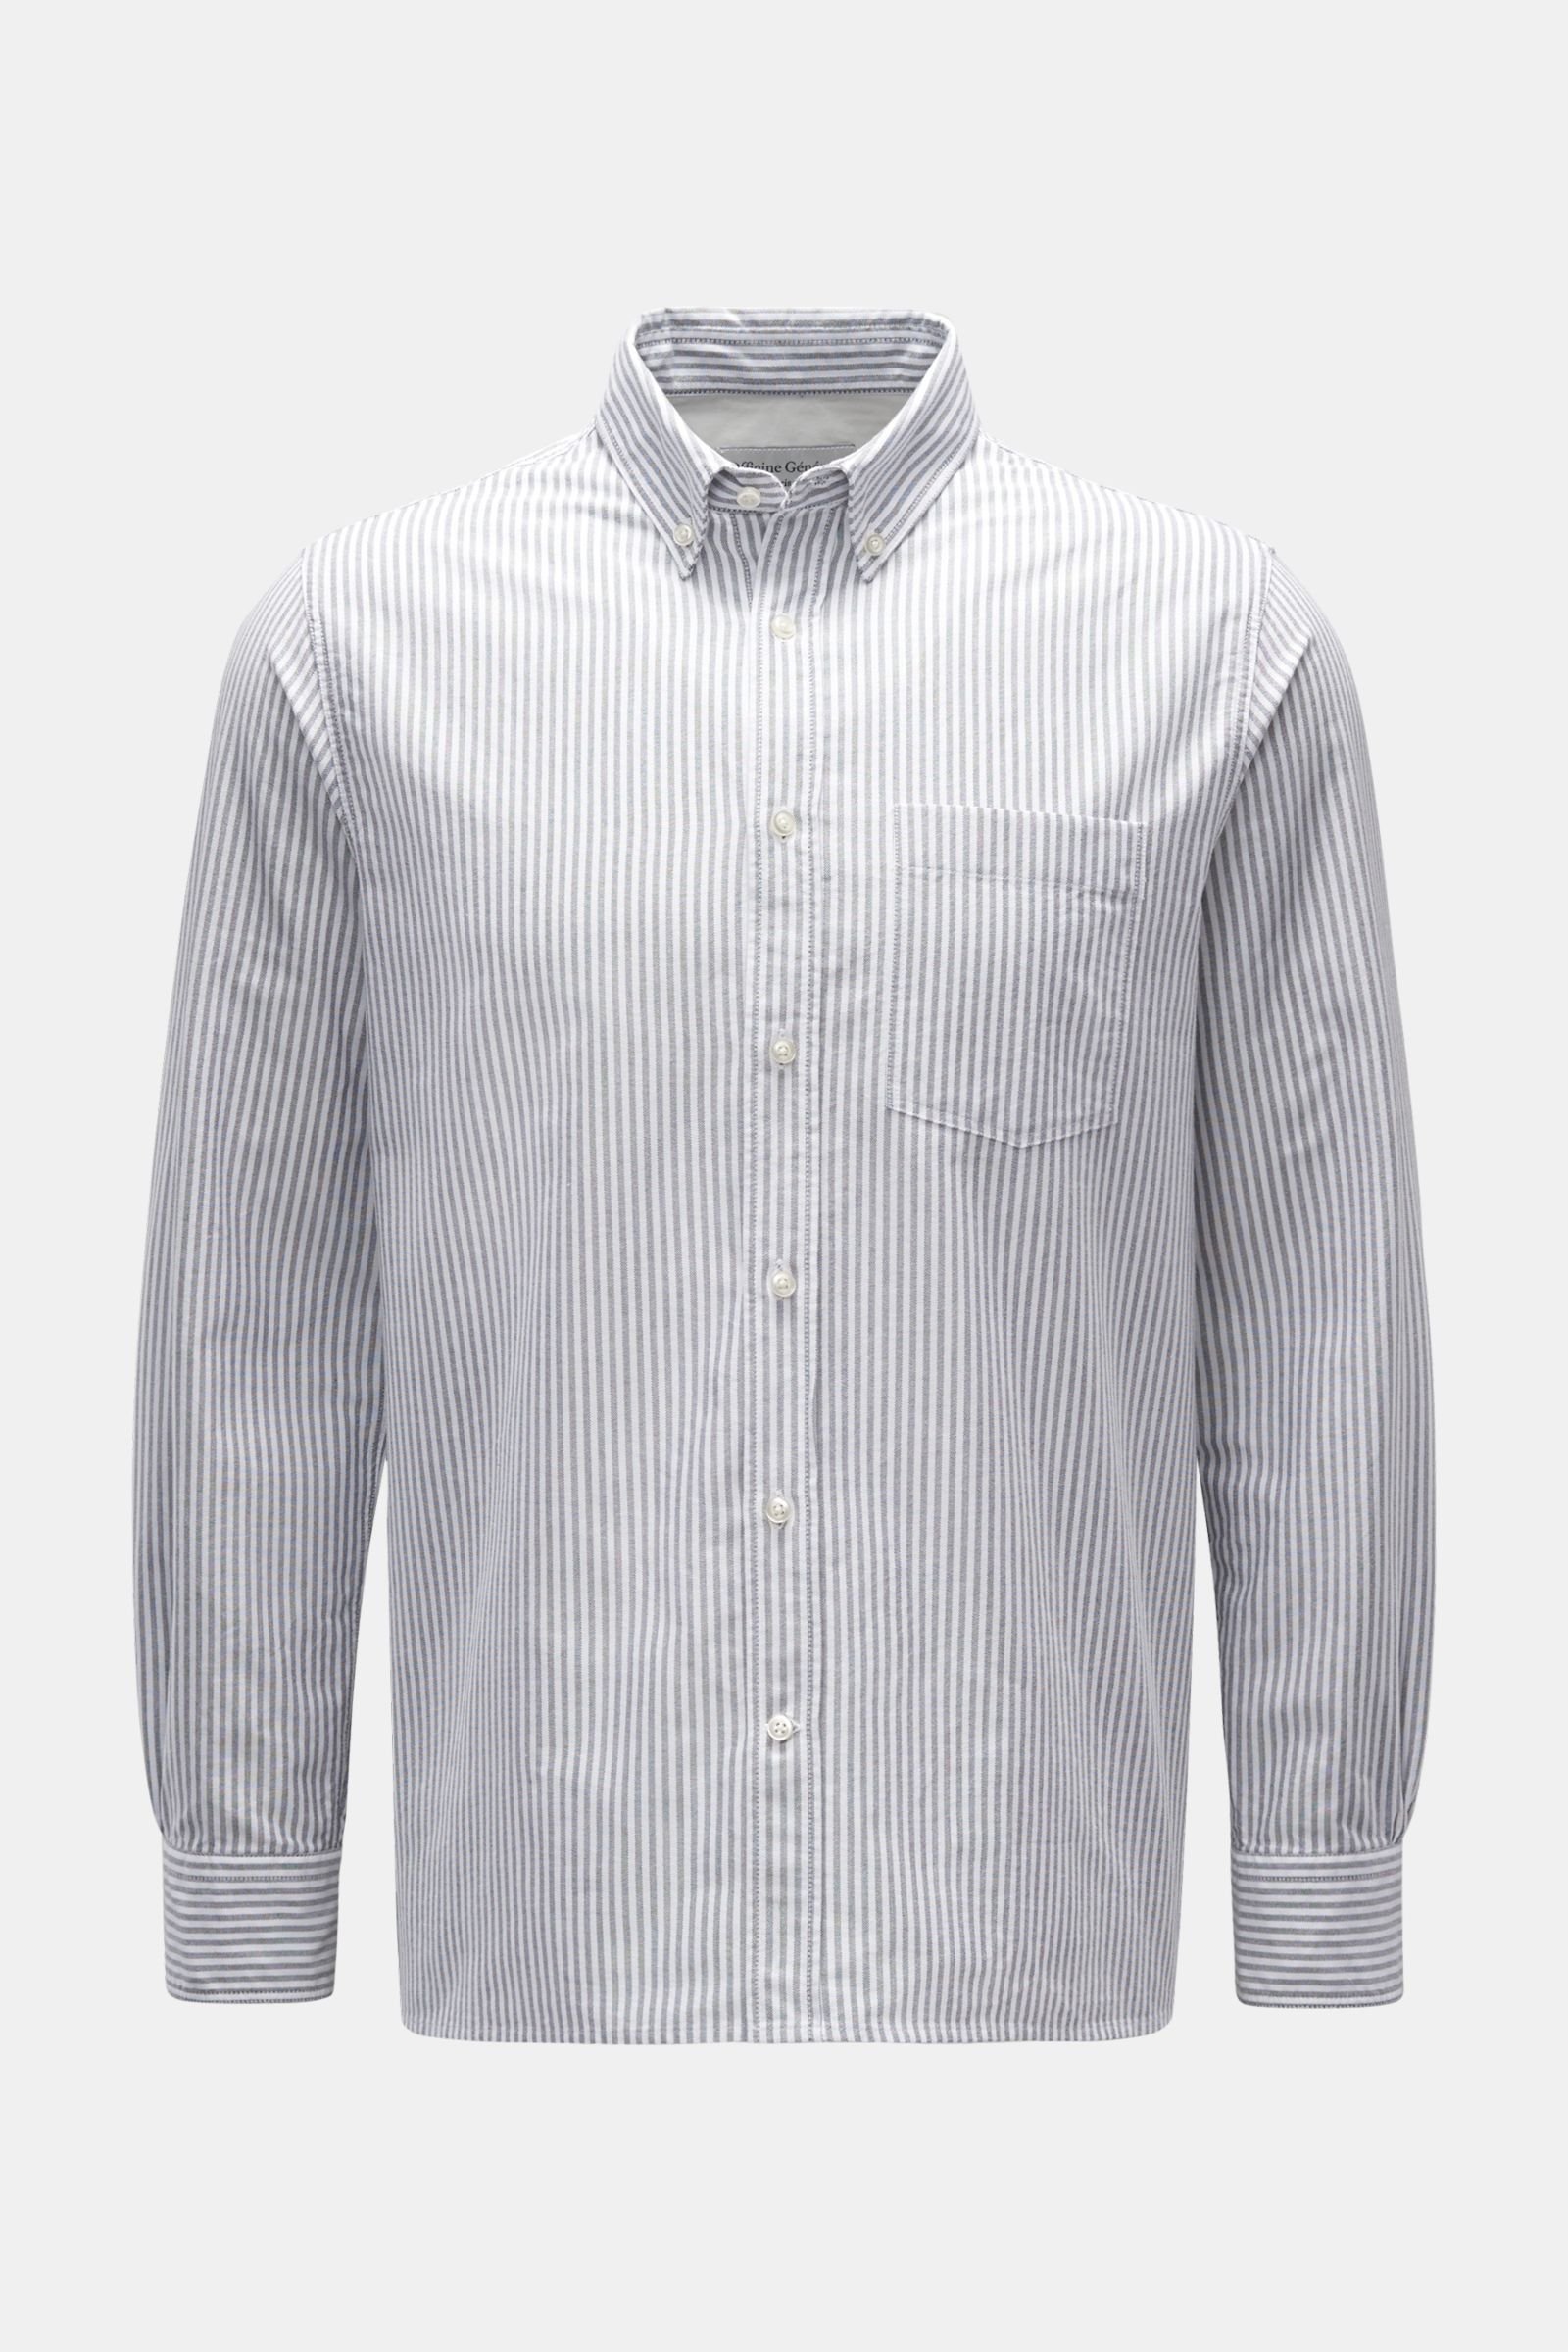 Oxfordhemd 'Arsene' Button-Down-Kragen dunkelgrau/weiß gestreift 